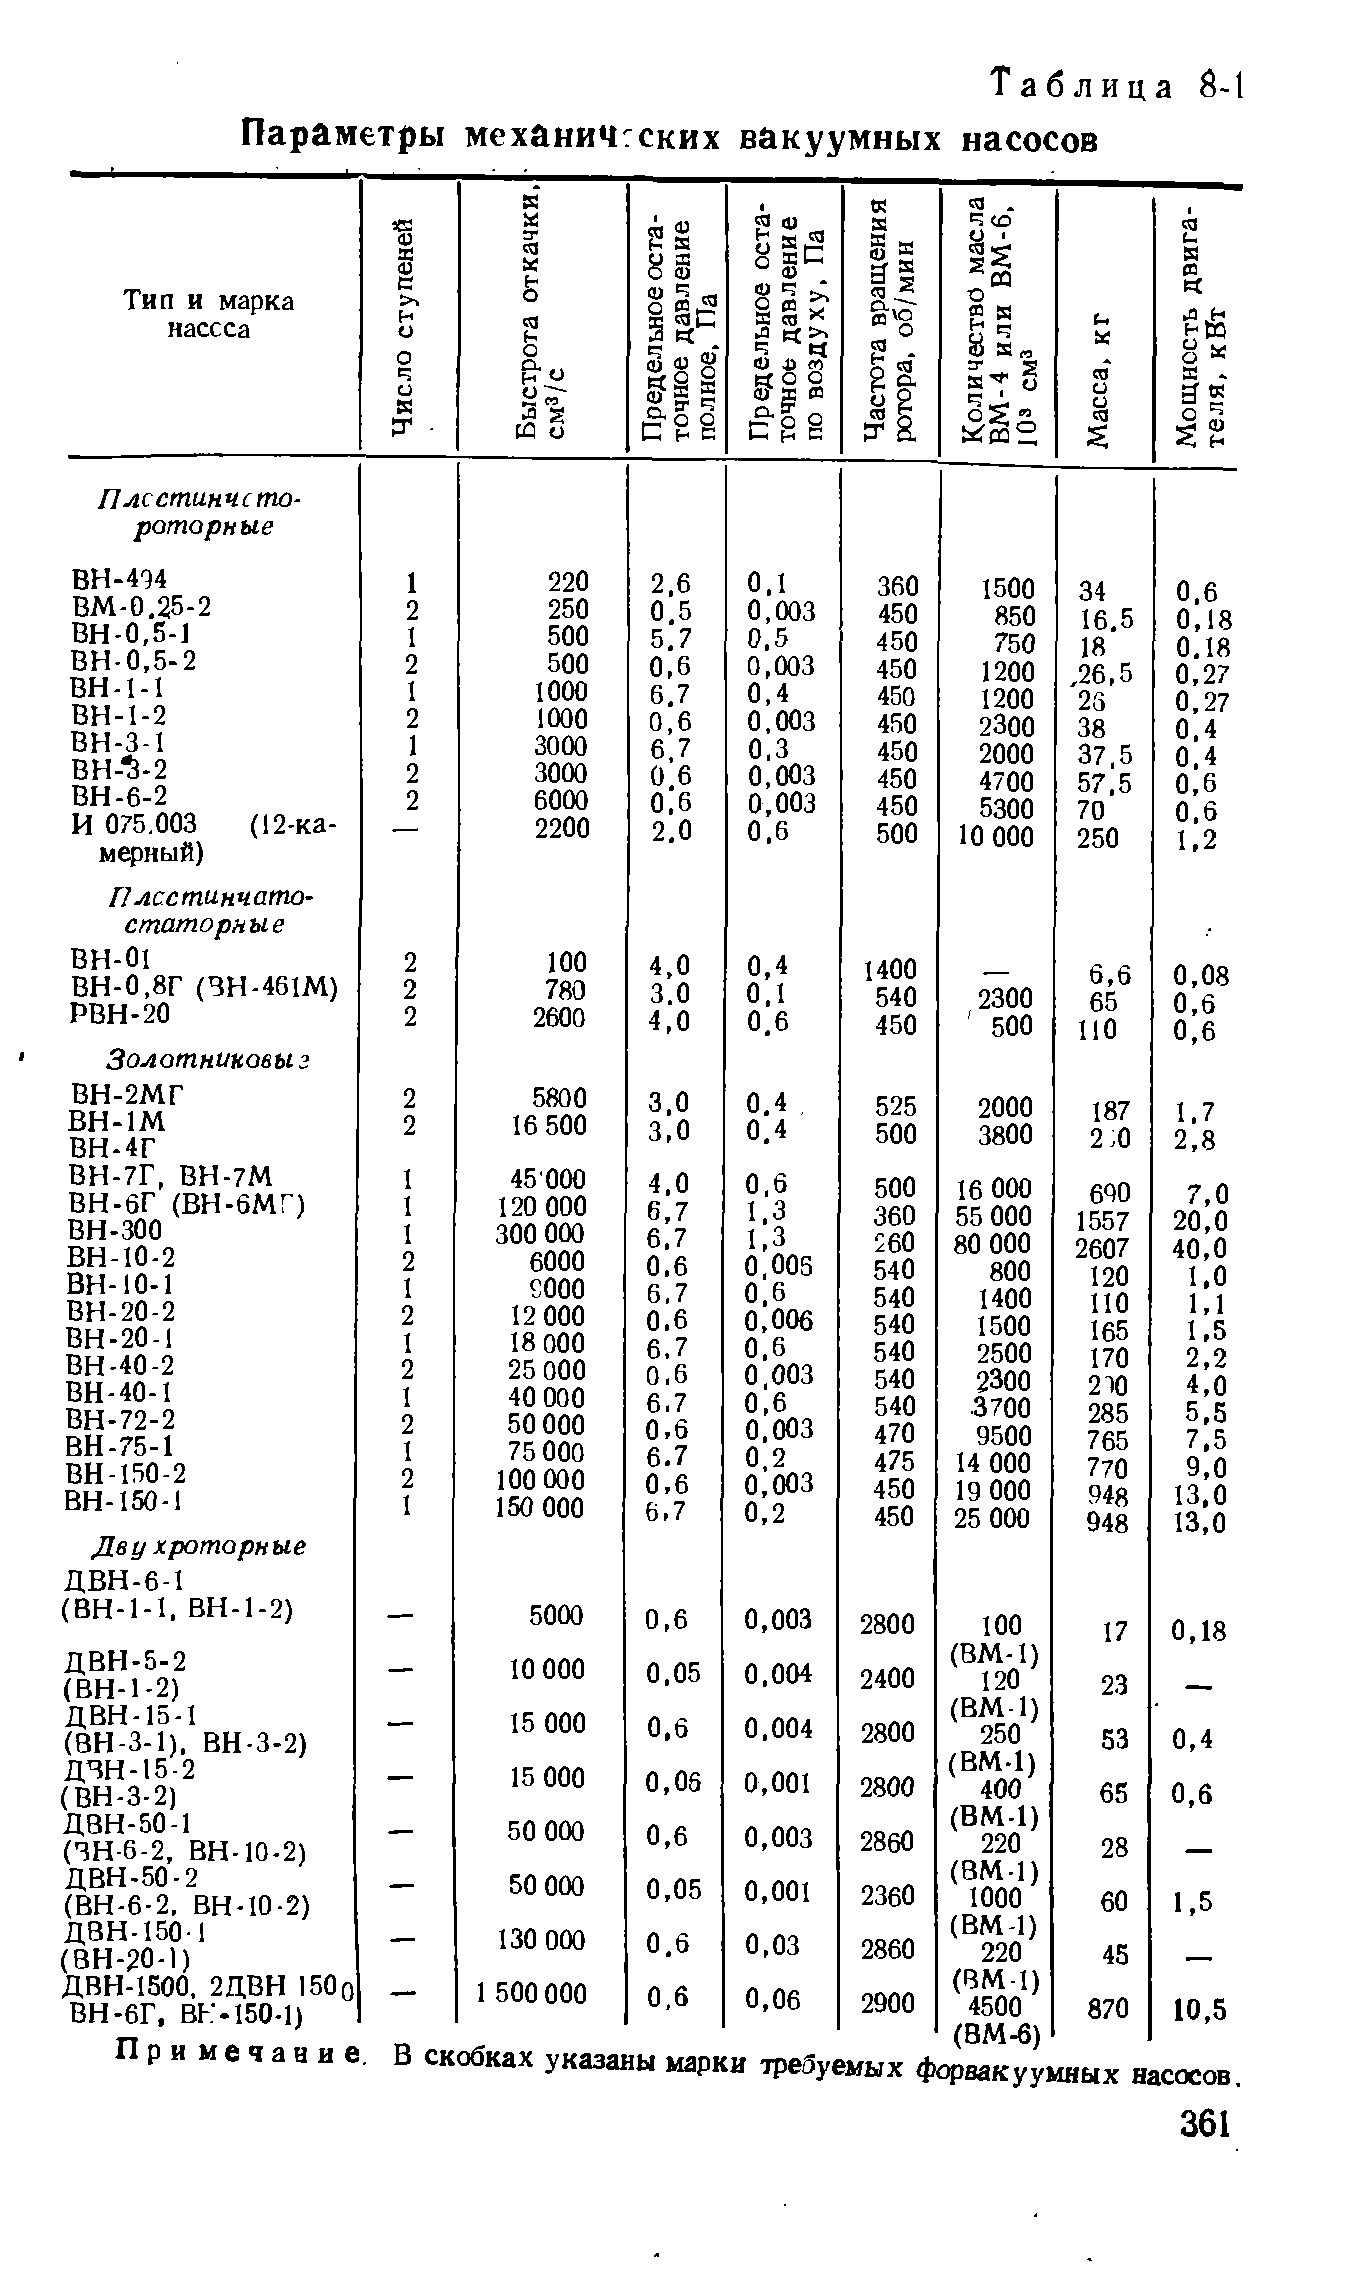 Таблица 8-1 Параметры механиЧ ских вакуумных насосов
